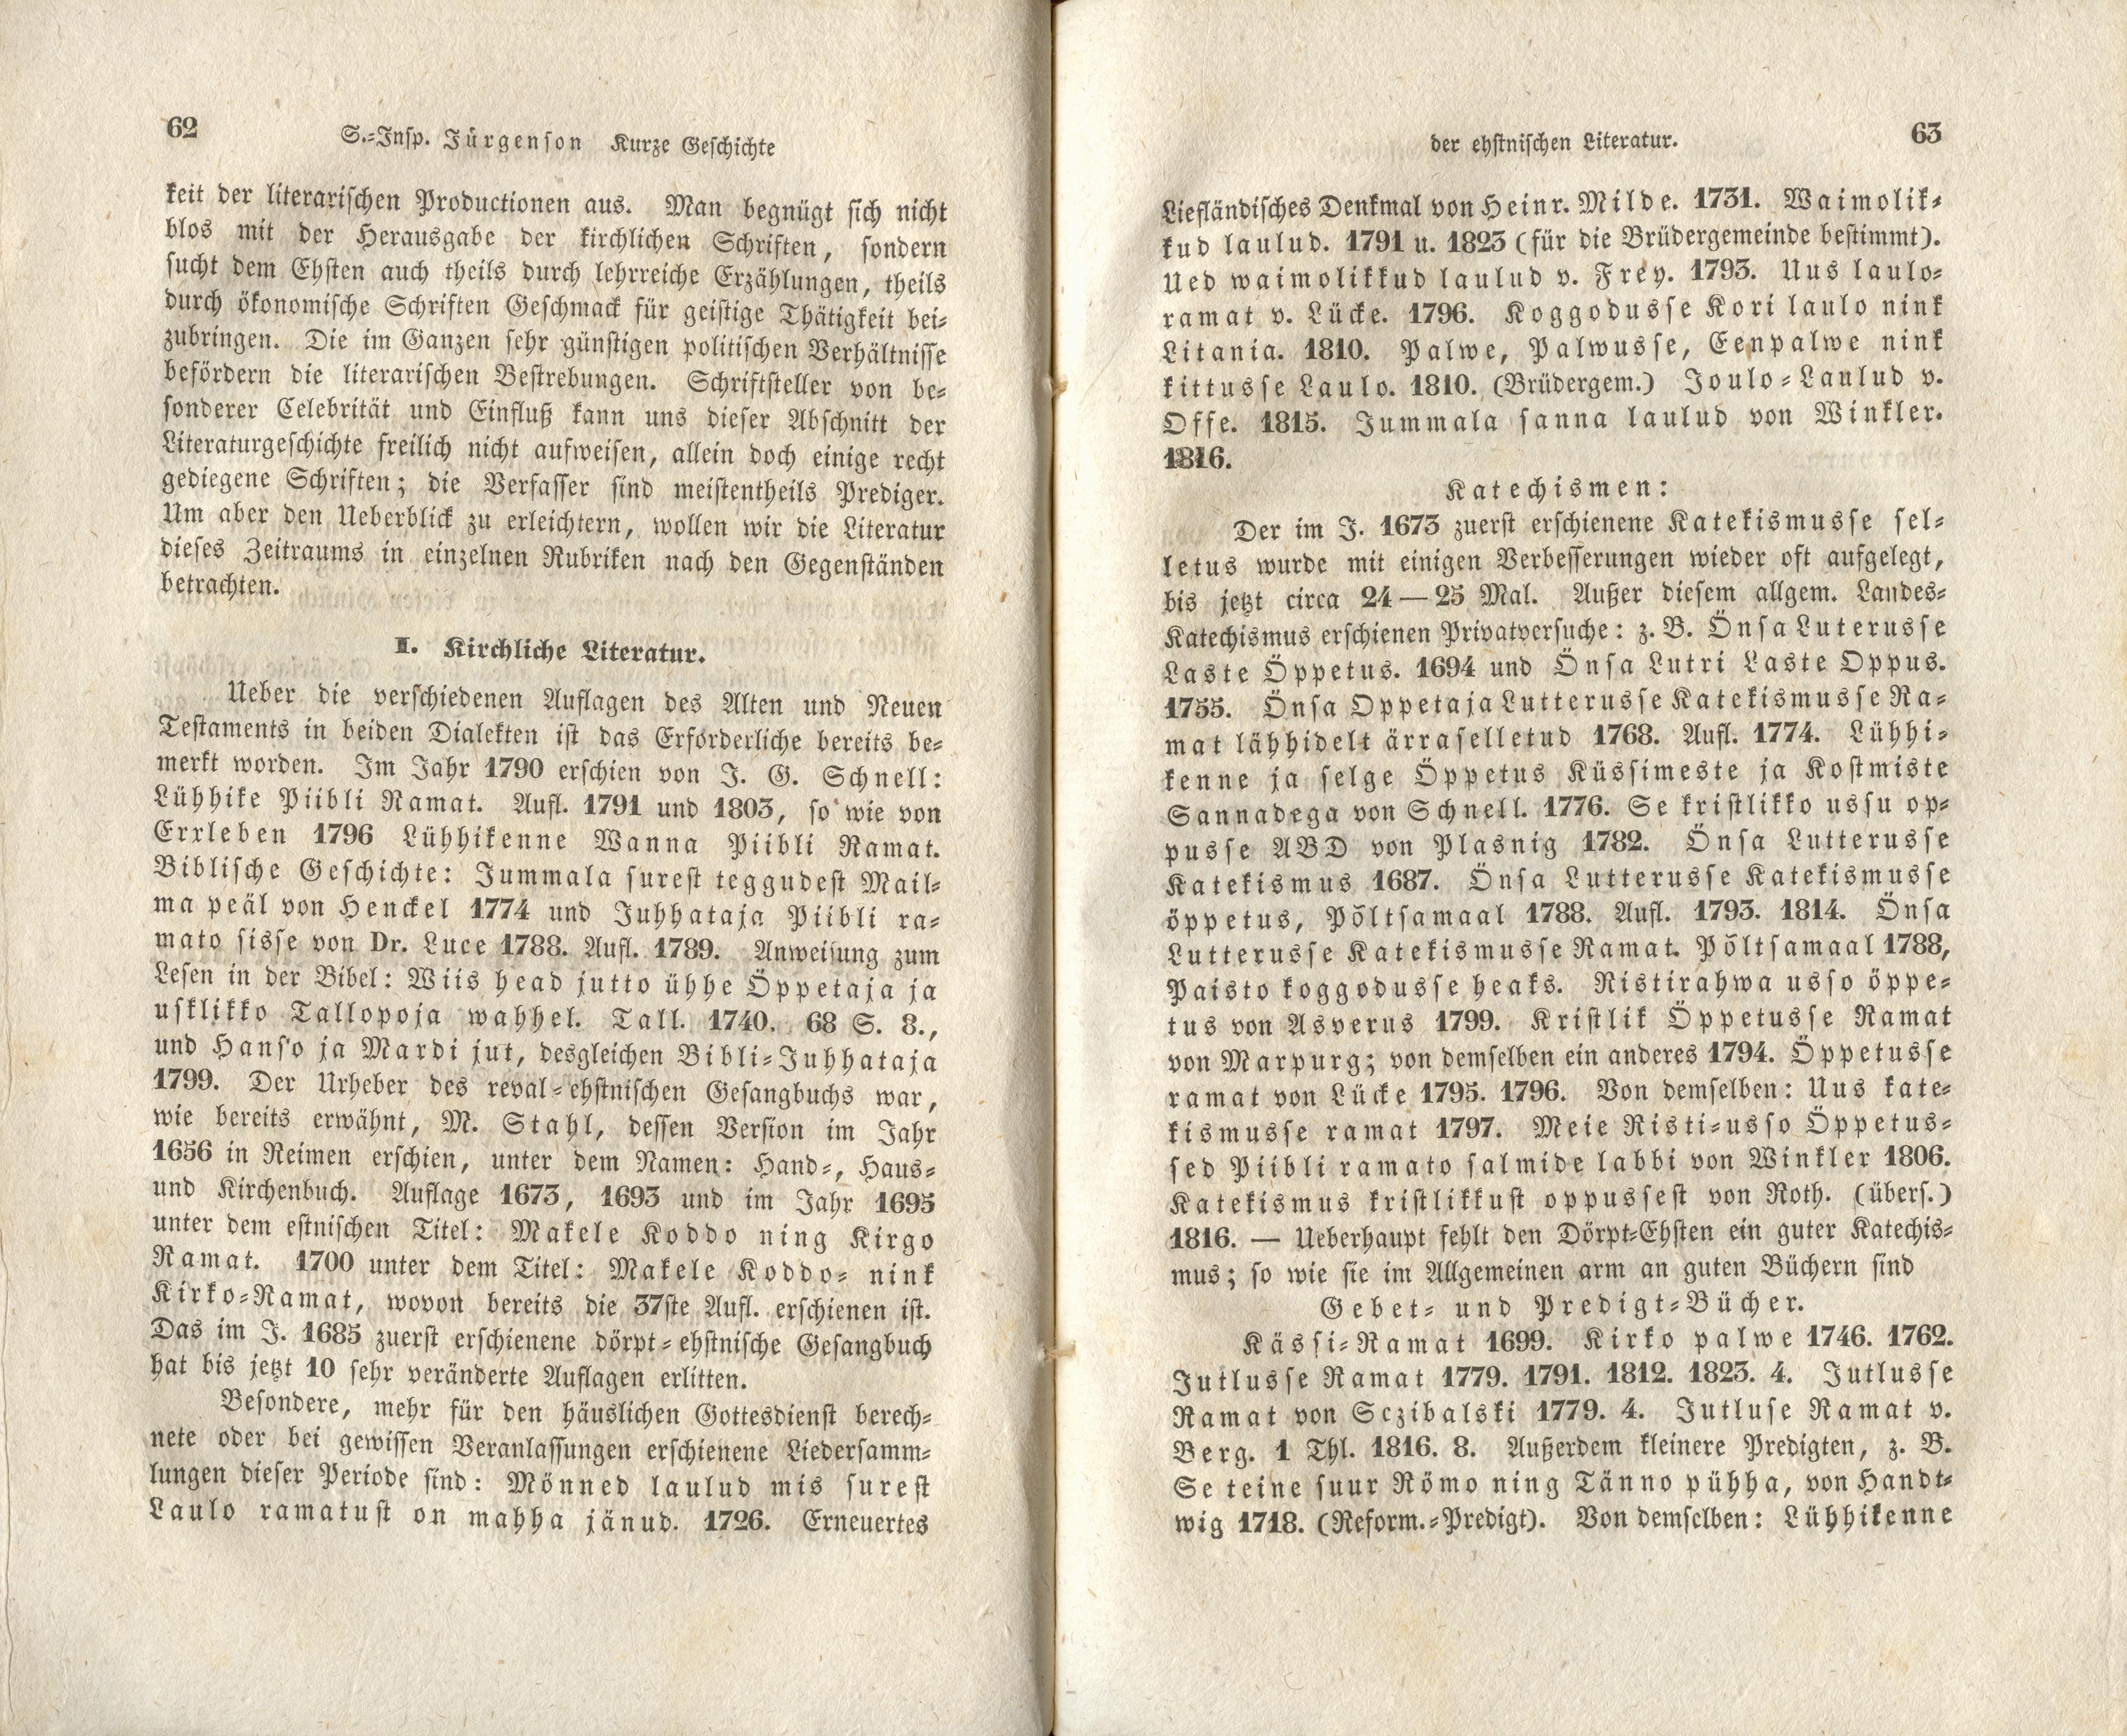 Verhandlungen der GEG [1] (1844) | 11. (62-63) Main body of text